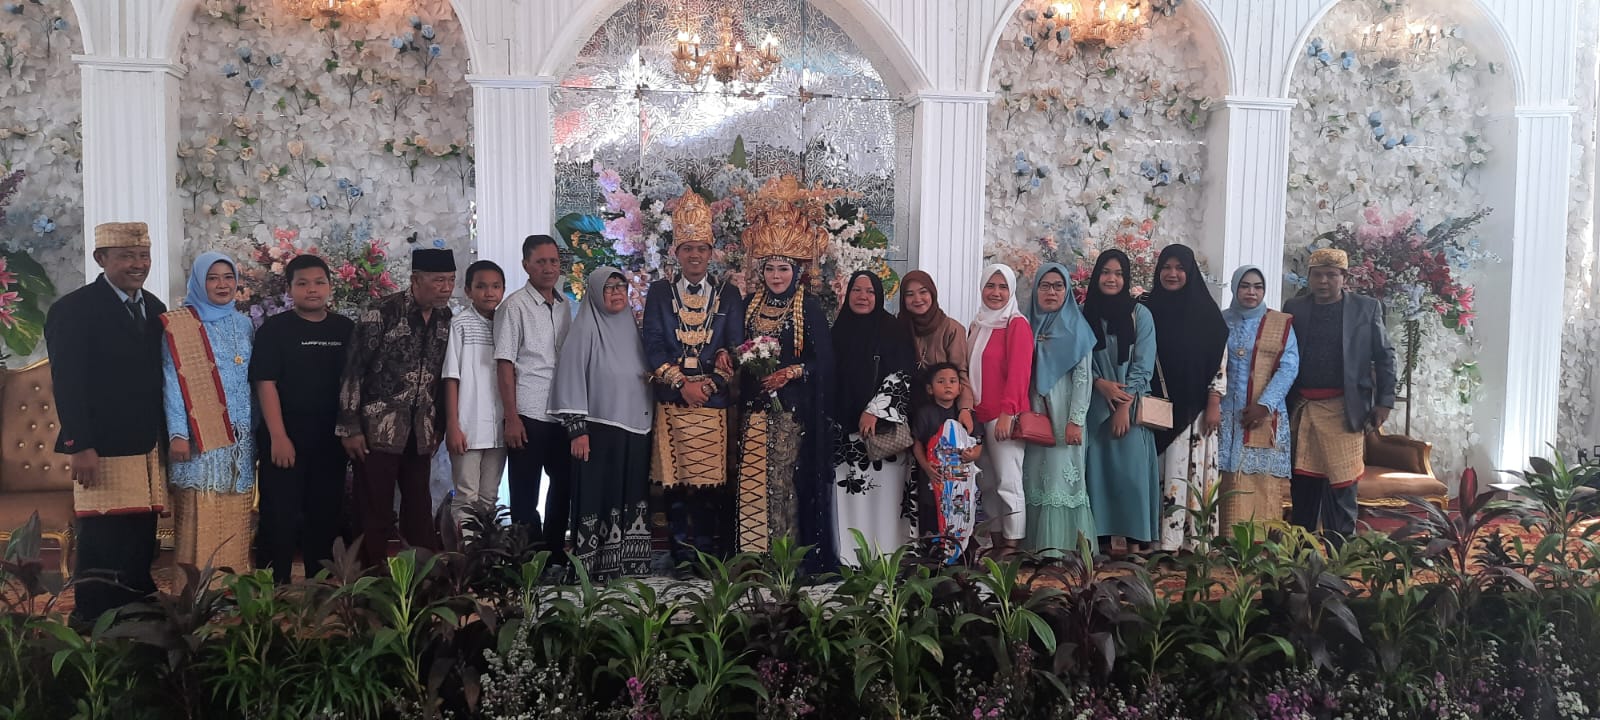 Mengenal Prosesi Pernikahan Adat Lampung dan Maknanya yang Penuh Etnik 